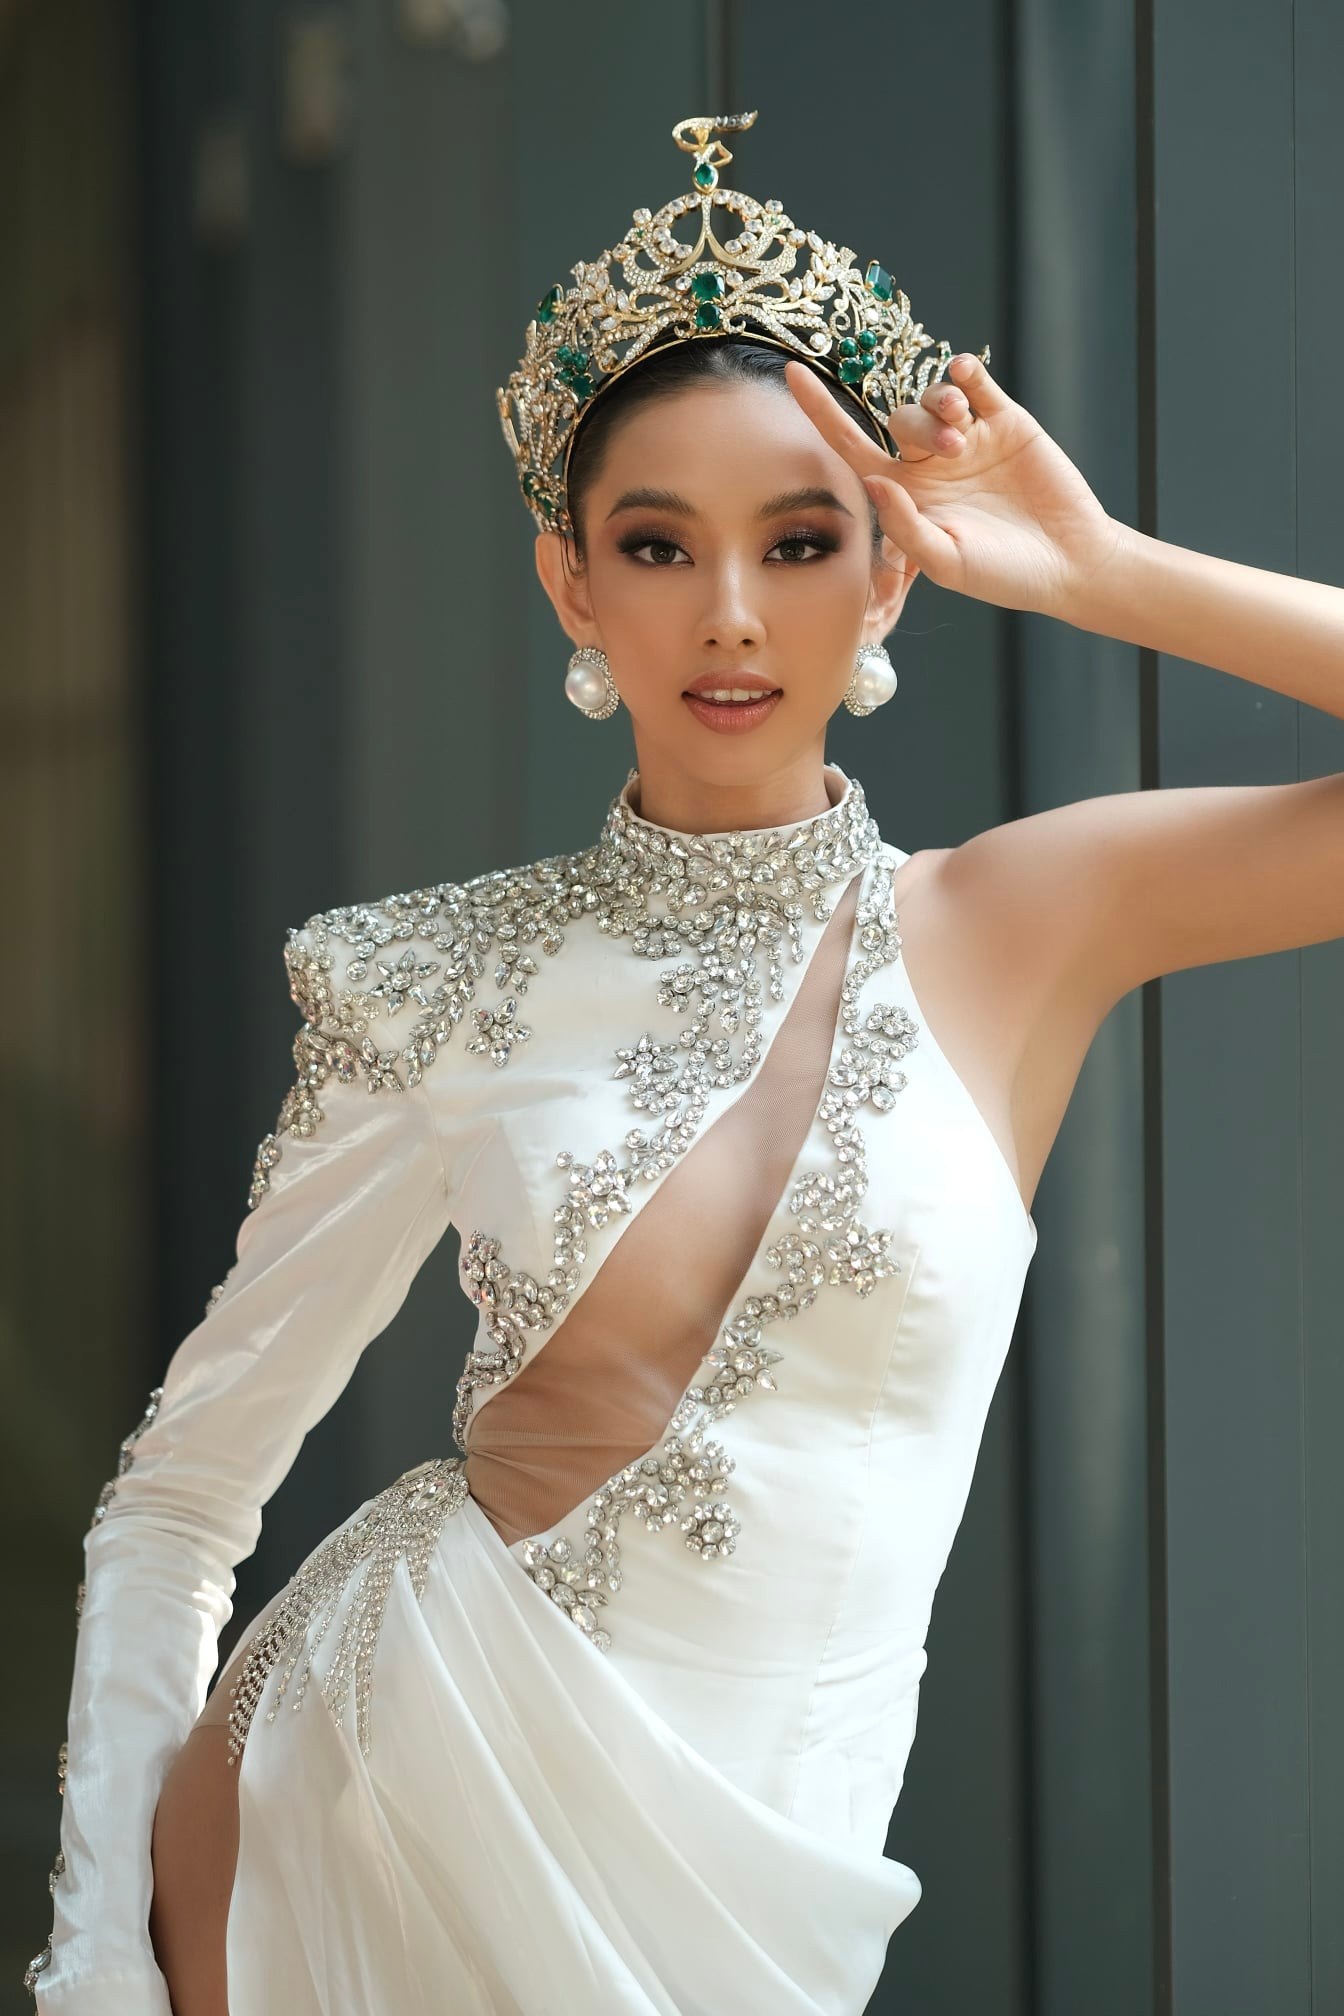 Danh hiệu Hoa hậu của Thùy Tiên giúp nhan sắc Việt thăng hạng - Ảnh 6.